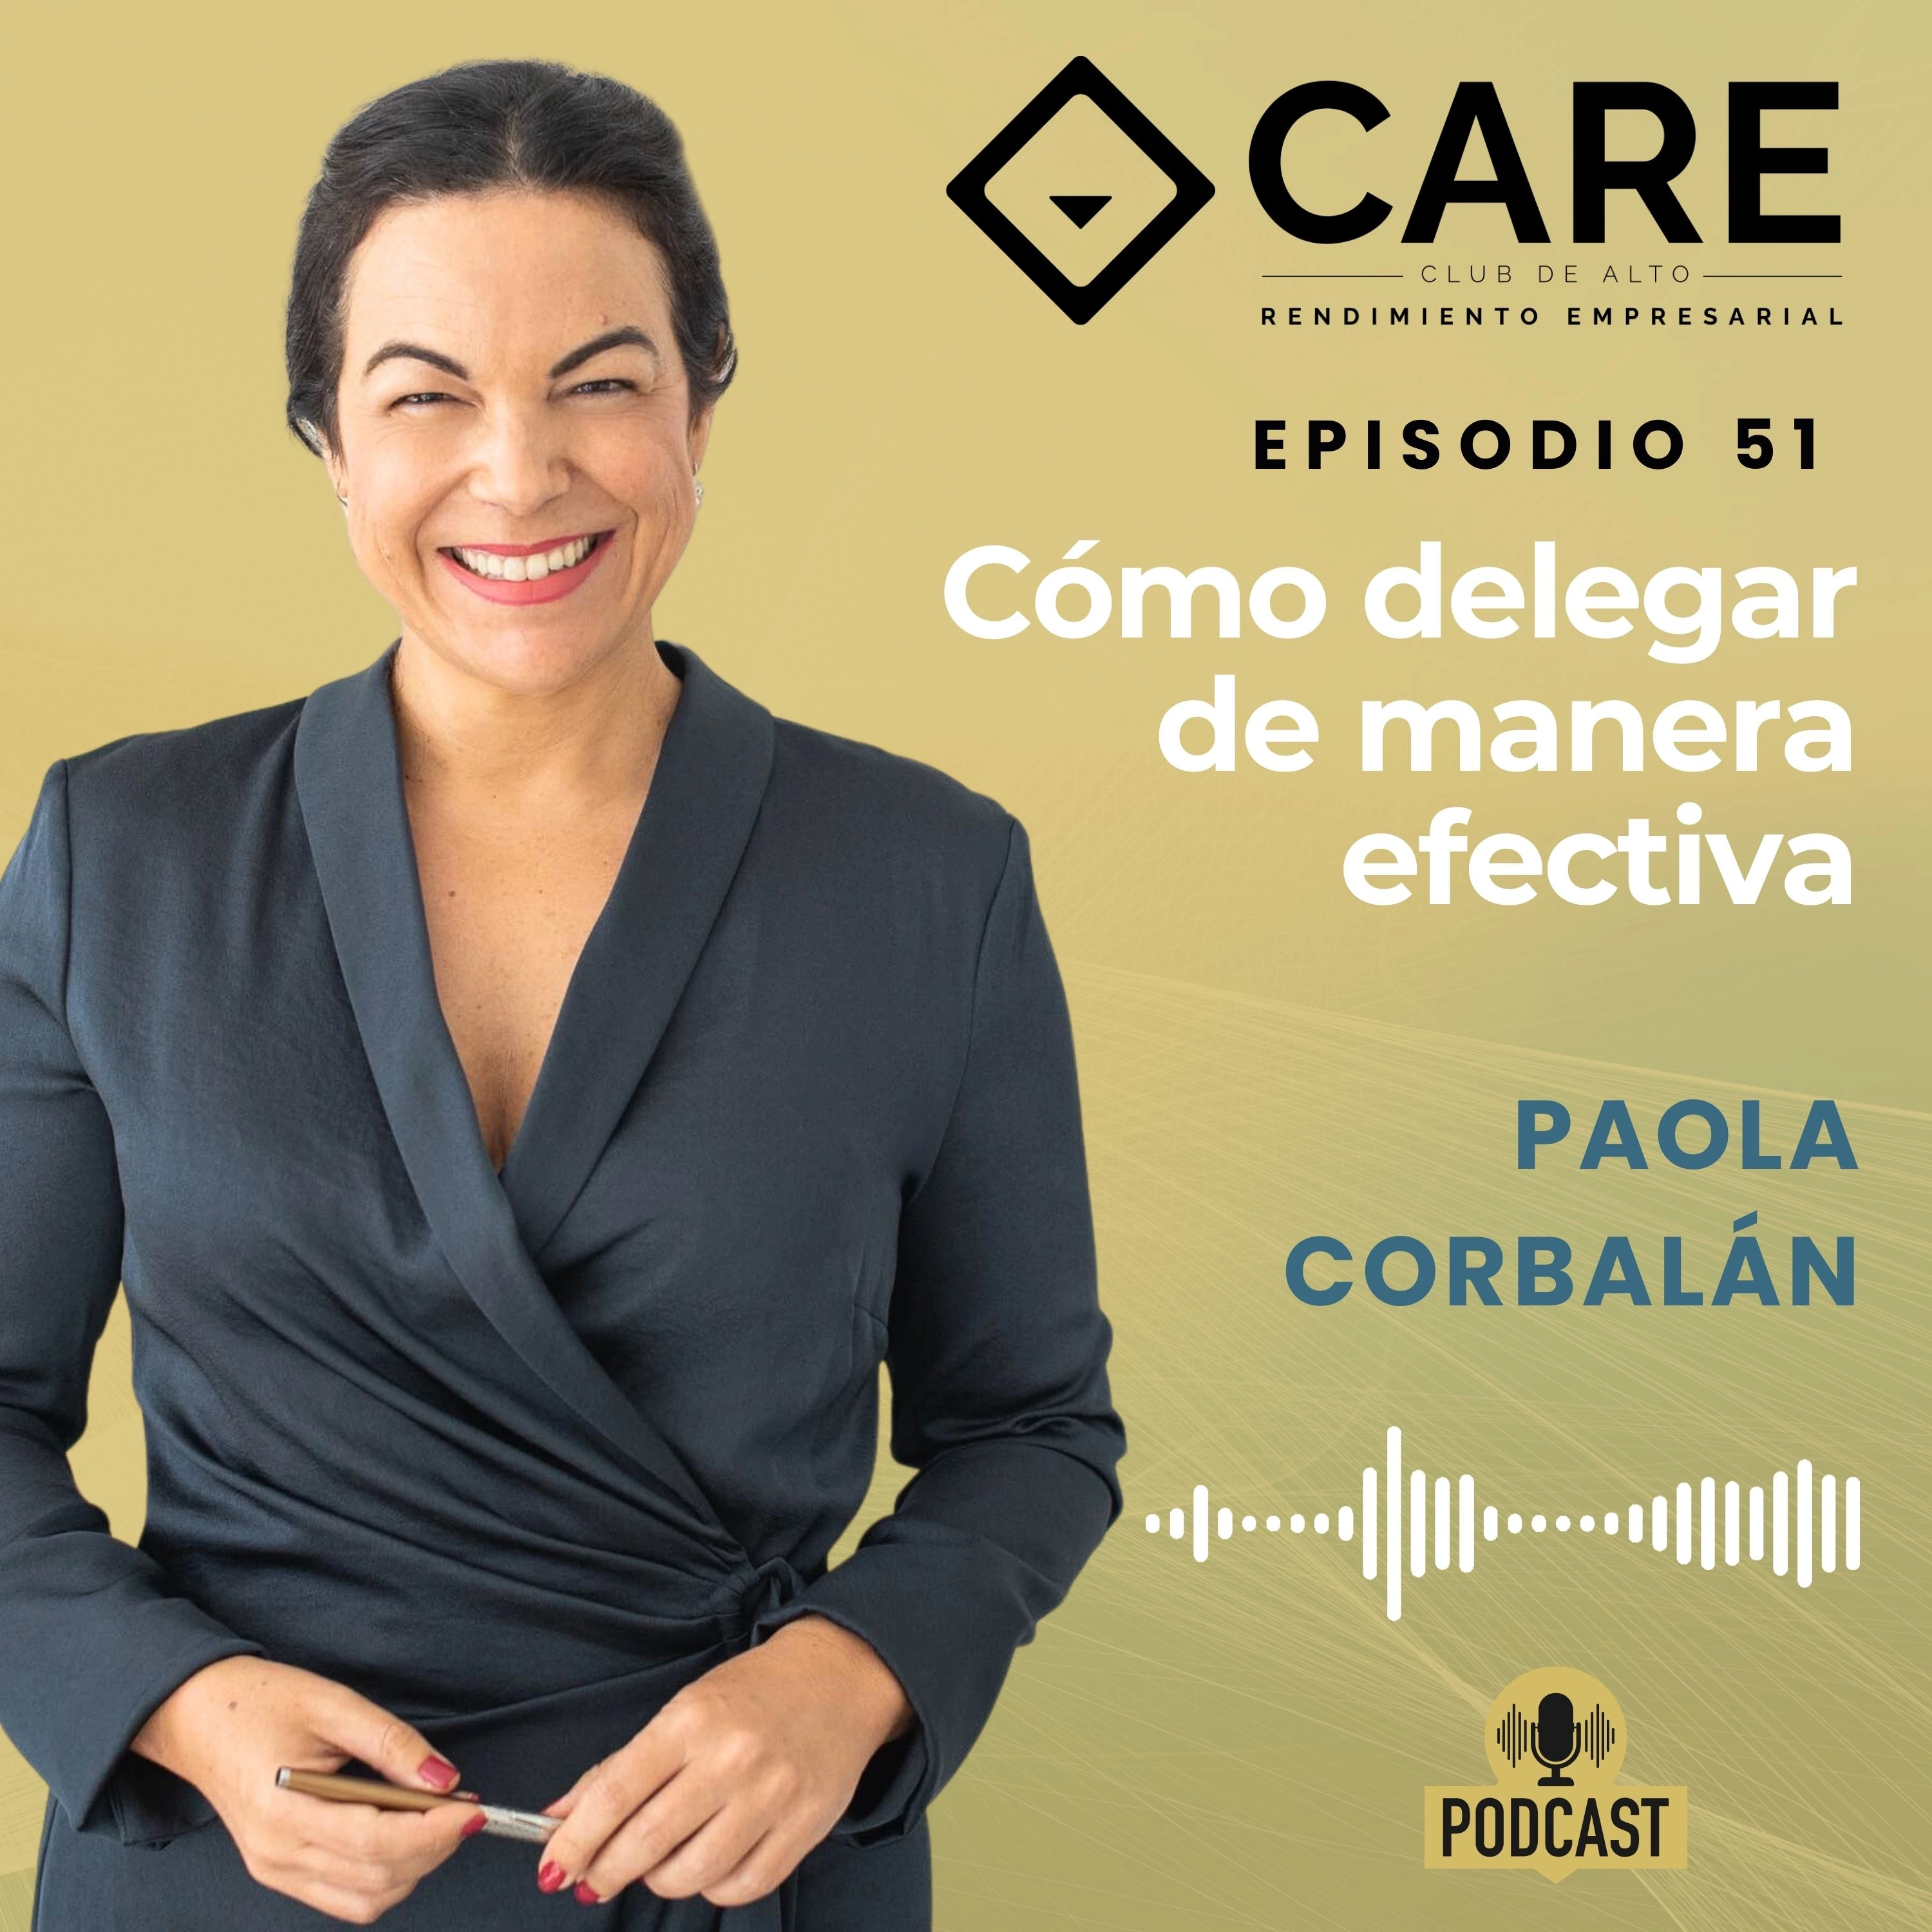 Episodio 51 - Cómo delegar de manera efectiva, con Paola Corbalán - Club de Alto Rendimiento Empresarial